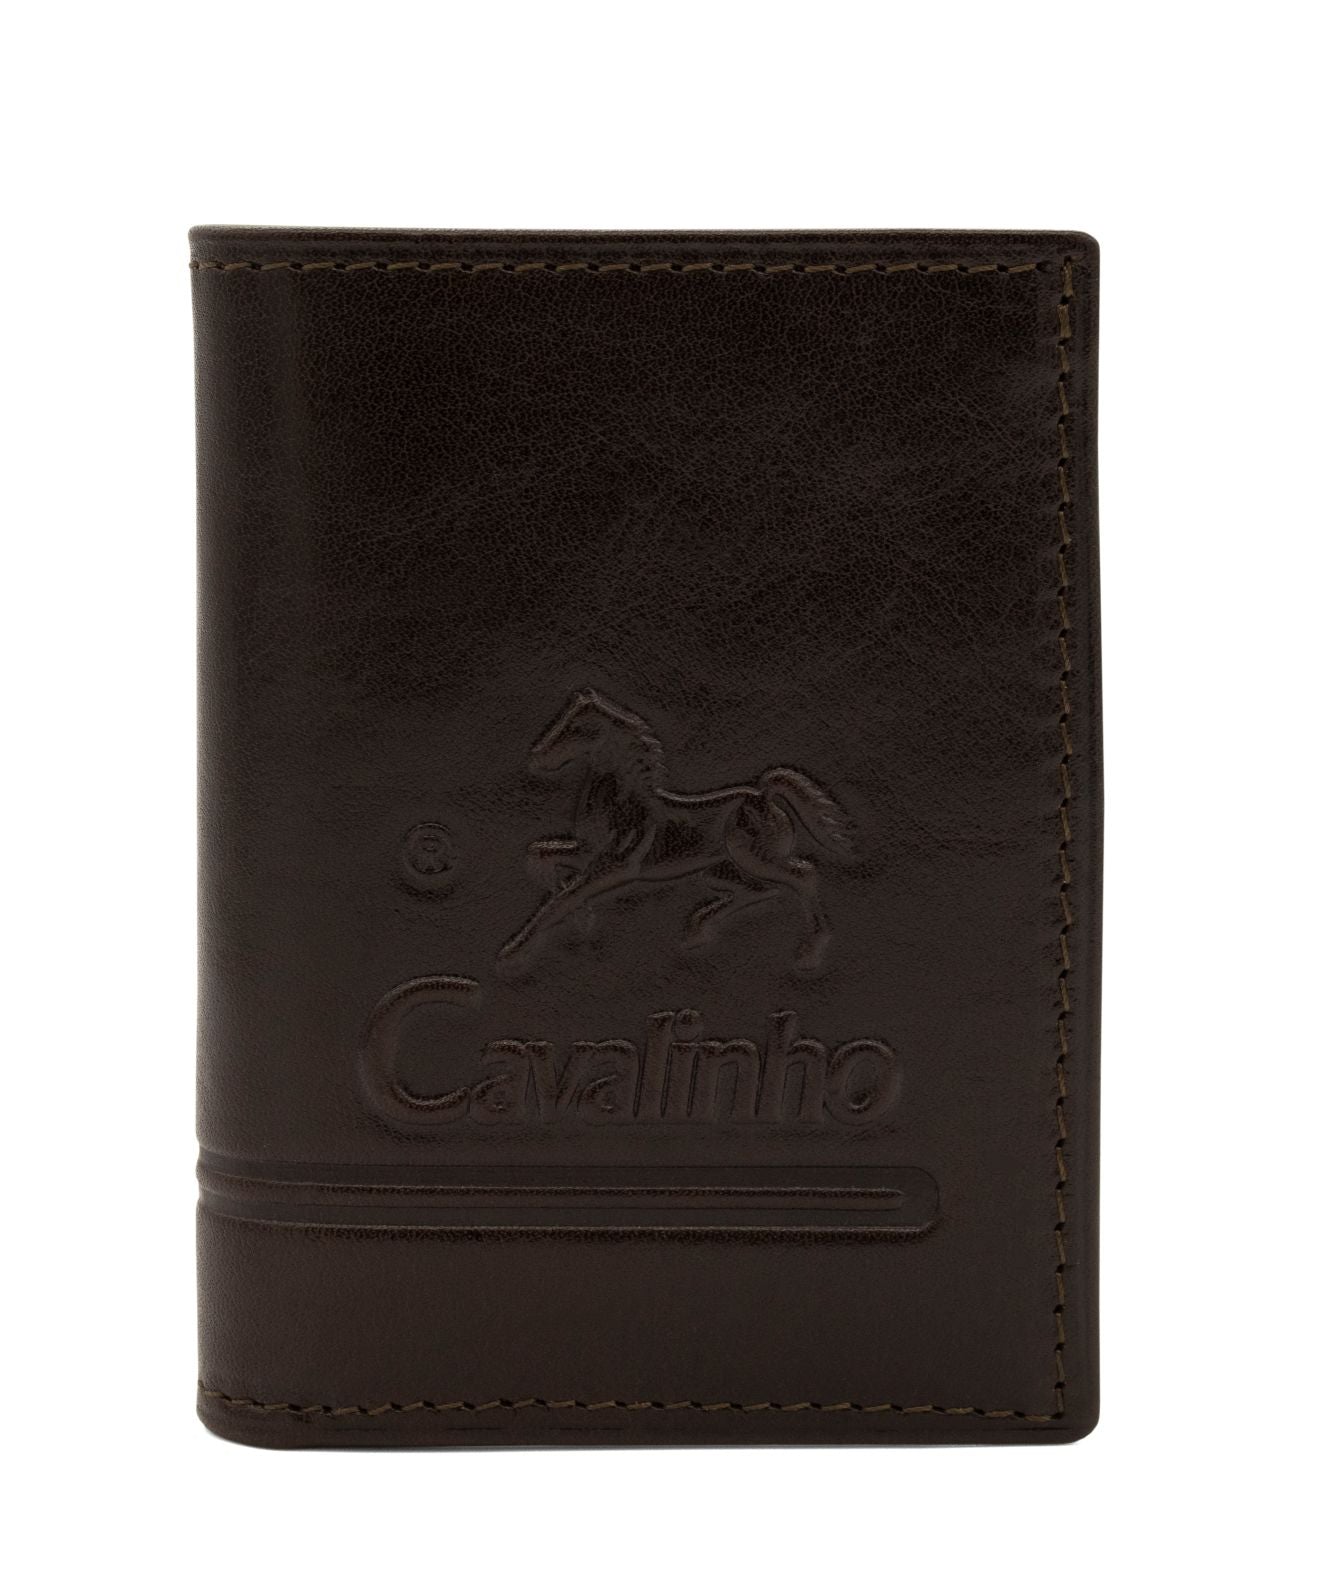 Cavalinho Men's Bifold Slim Leather Wallet - Brown - 28610533.02_1